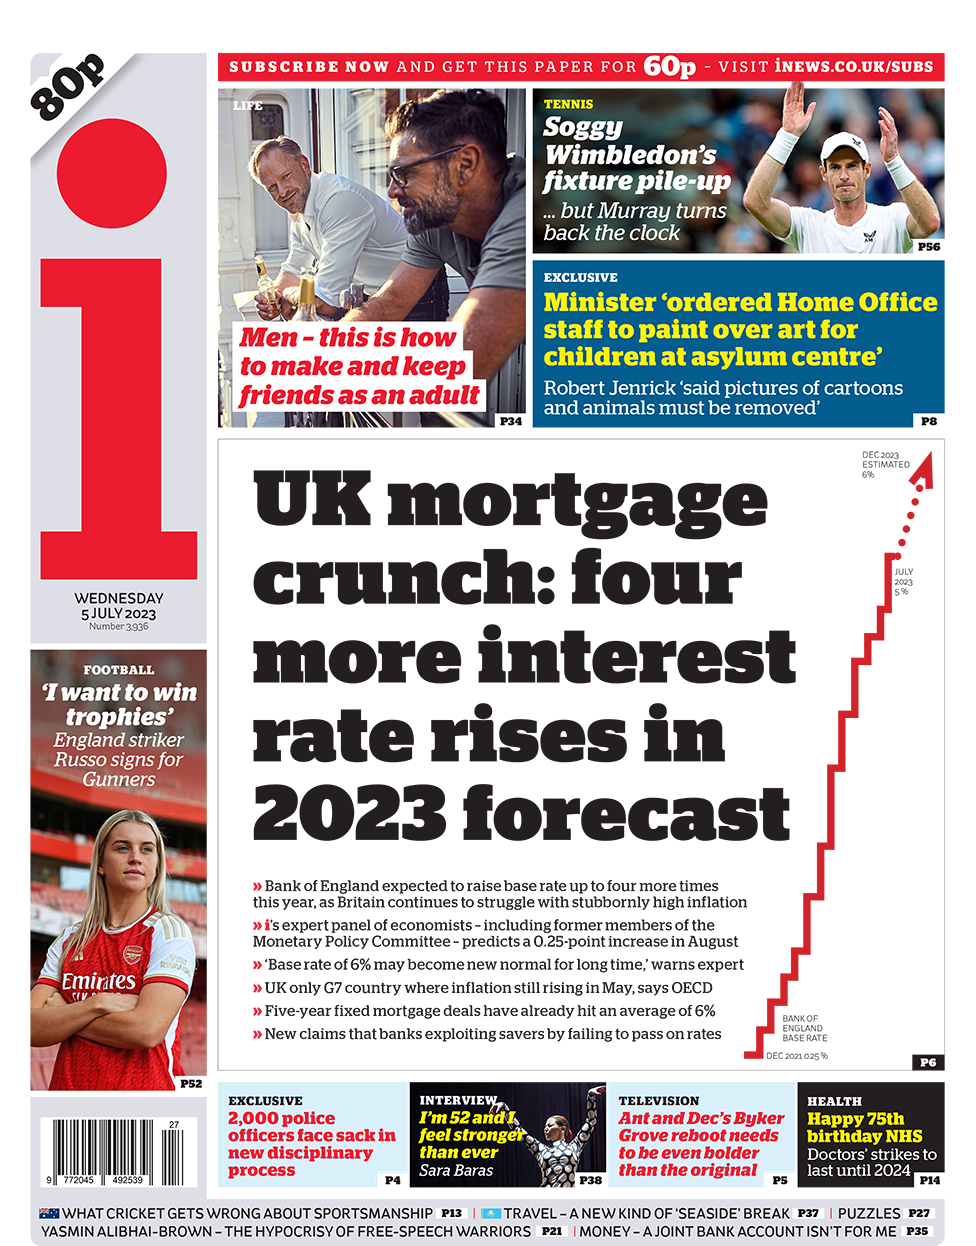 Заголовок на первой странице газеты i гласит: «Ипотечный кризис в Великобритании: в прогнозе на 2023 год процентные ставки повысятся еще четыре раза»